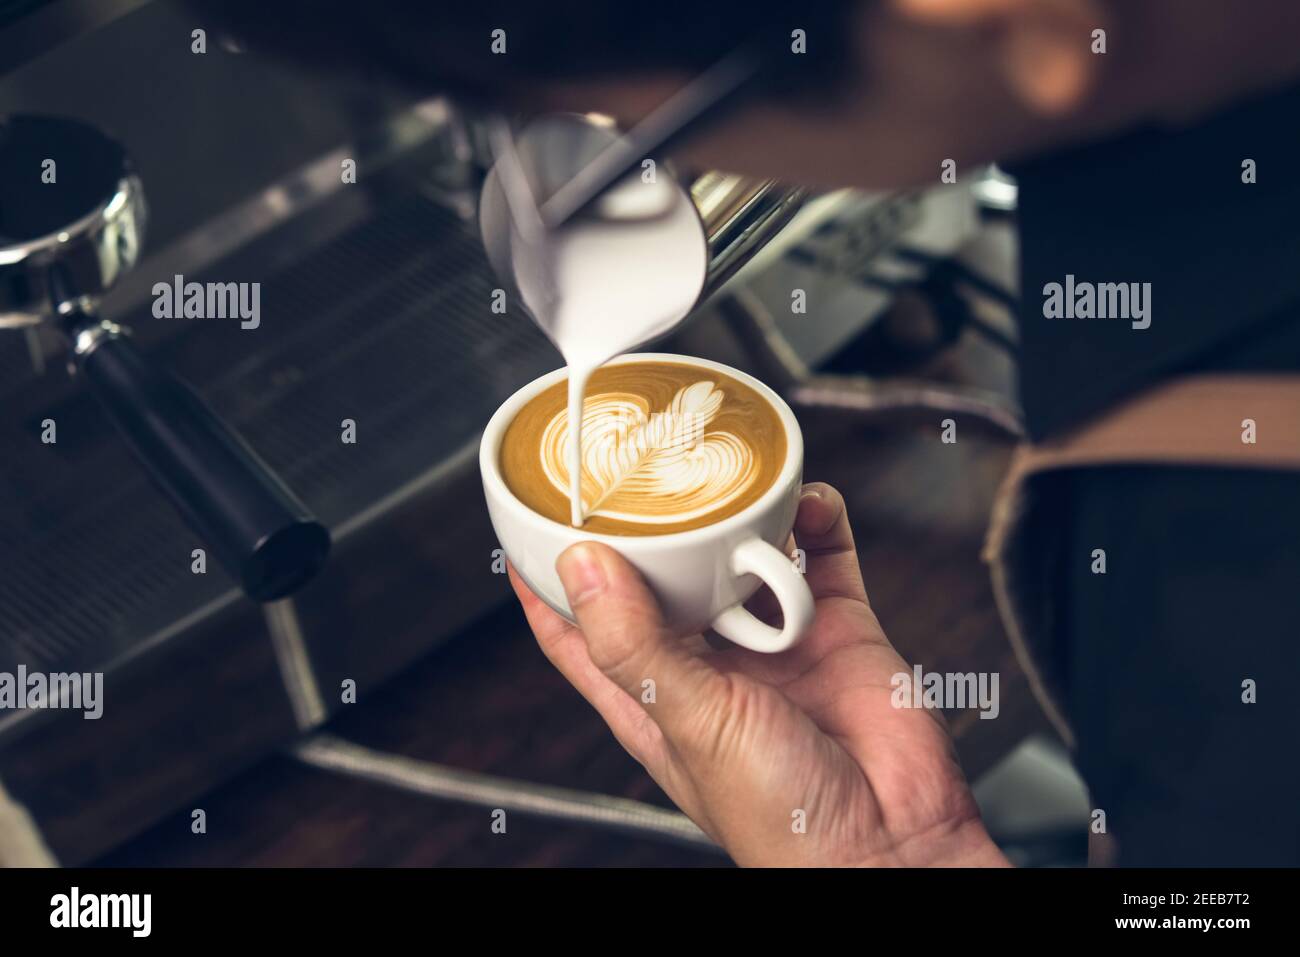 Un barista professionnel verse du lait chaud dans une tasse de café pour en faire un vrai délice motif latte art Rosetta Banque D'Images